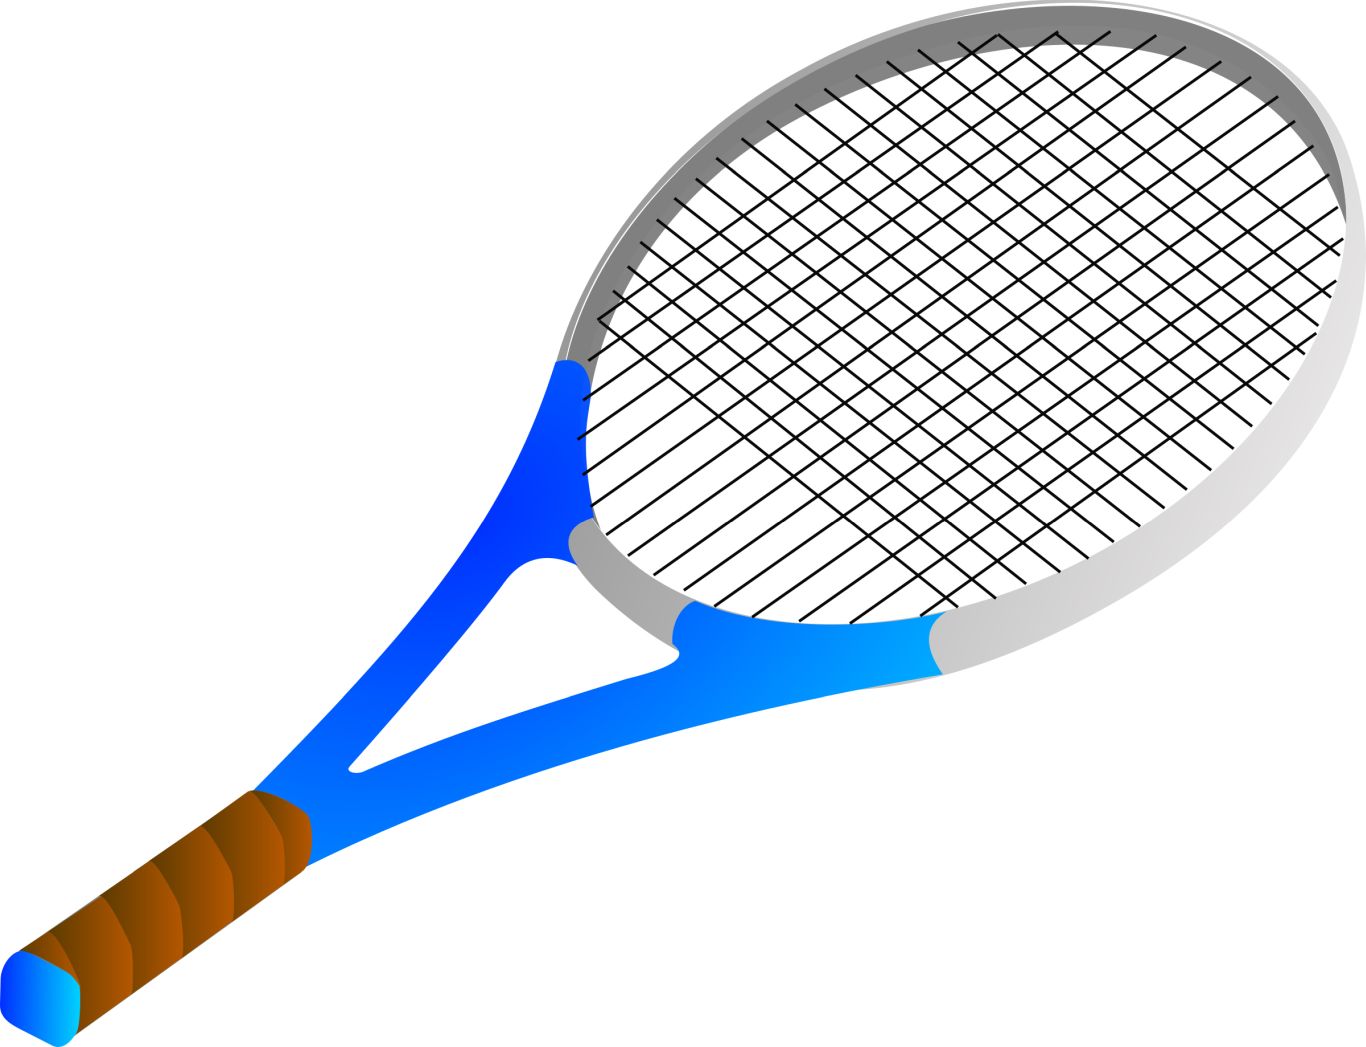 Tennis racket PNG image    图片编号:10401